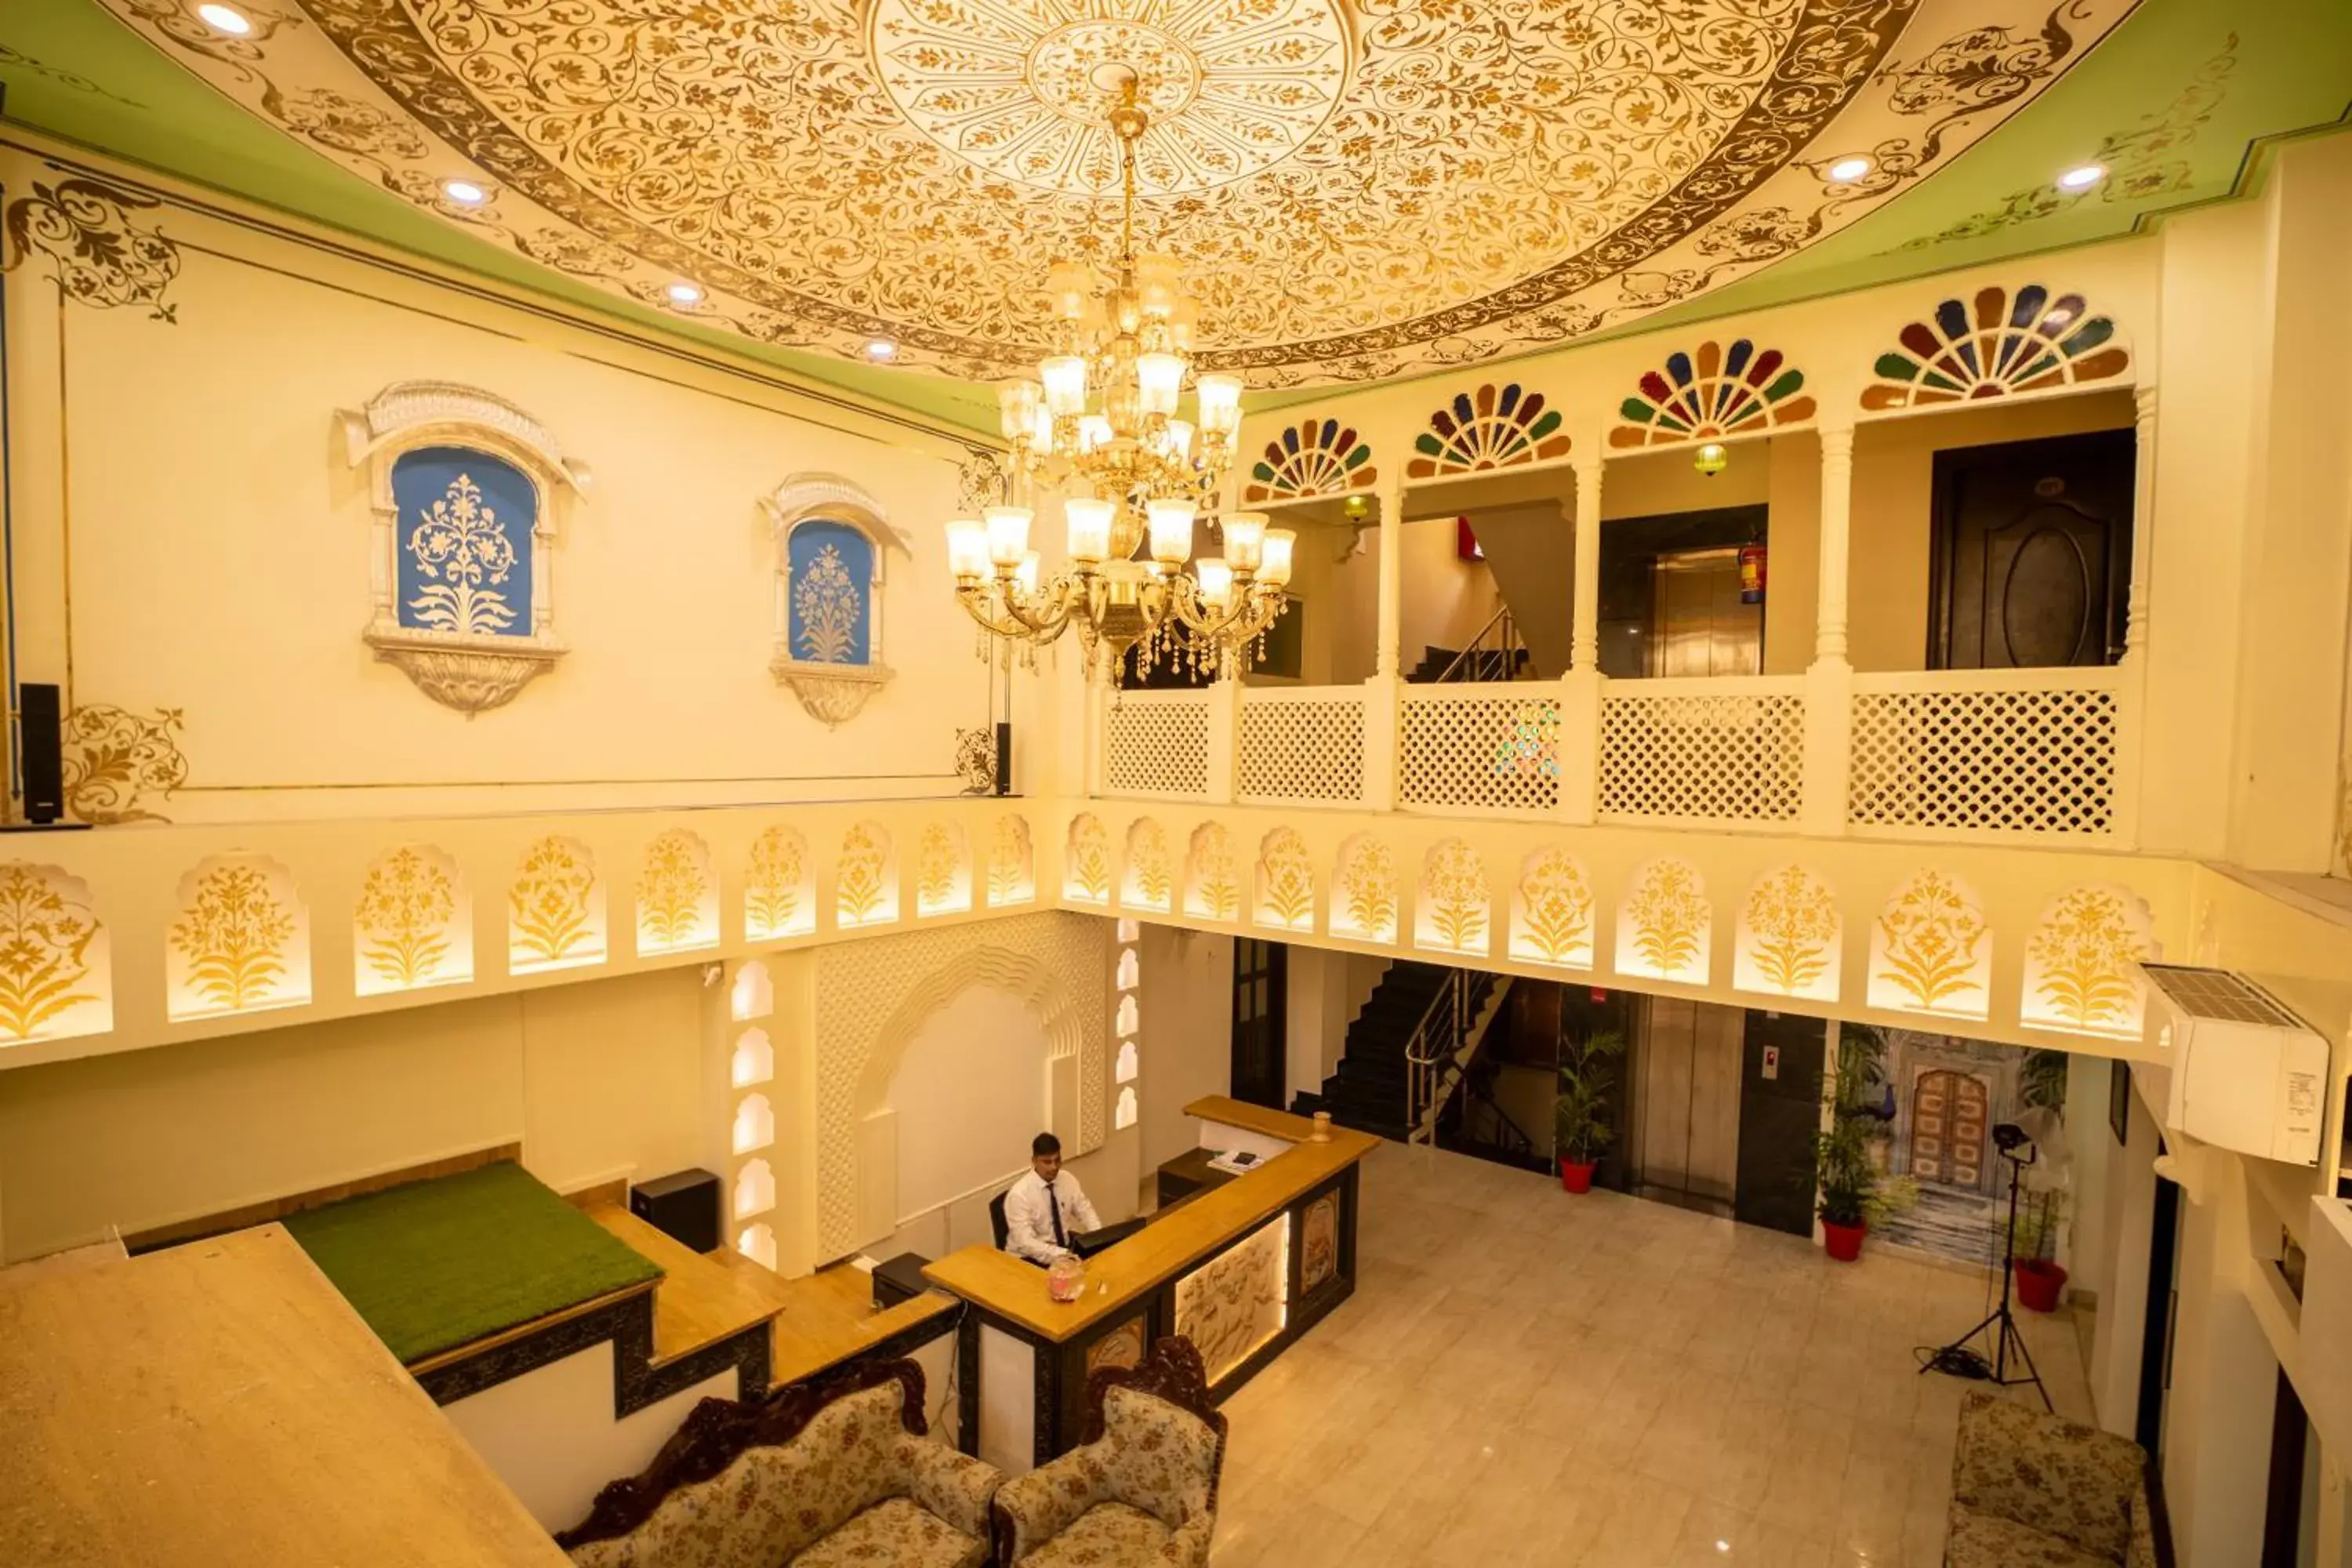 Lobby or reception in Hotel Laxmi Niwas